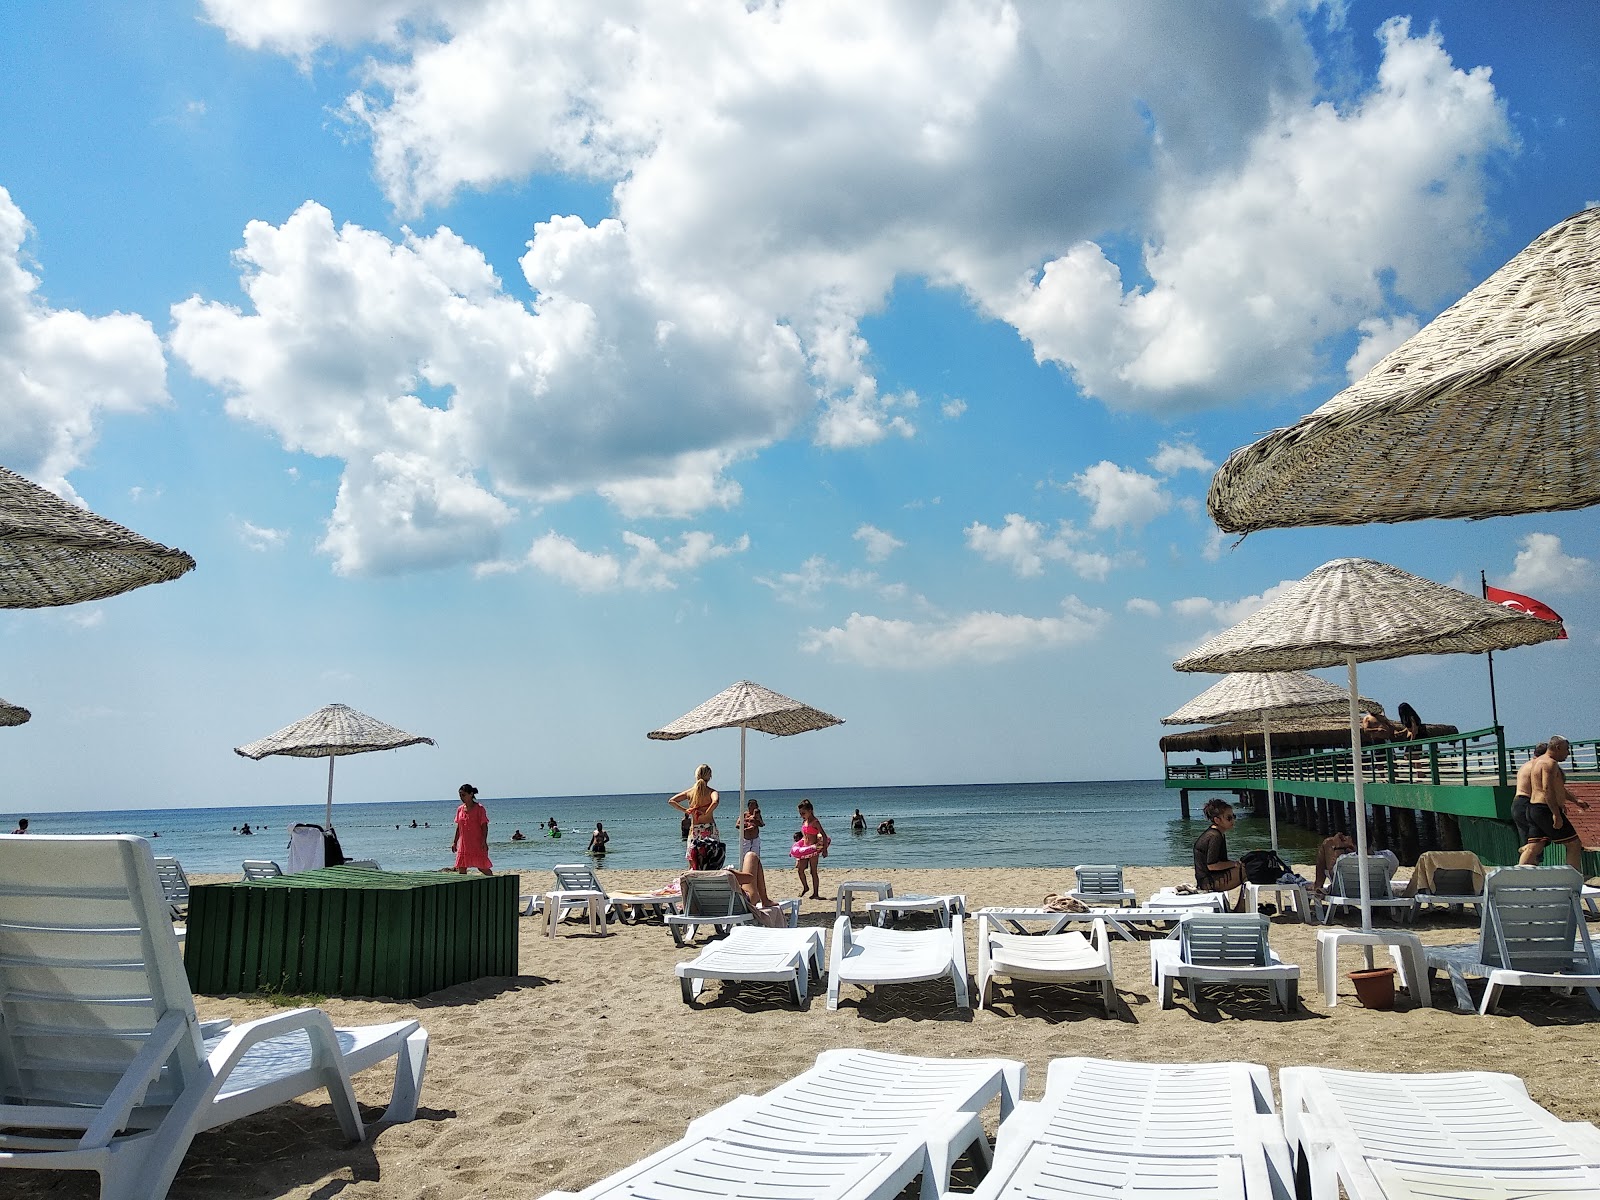 Kamiloba beach'in fotoğrafı - rahatlamayı sevenler arasında popüler bir yer